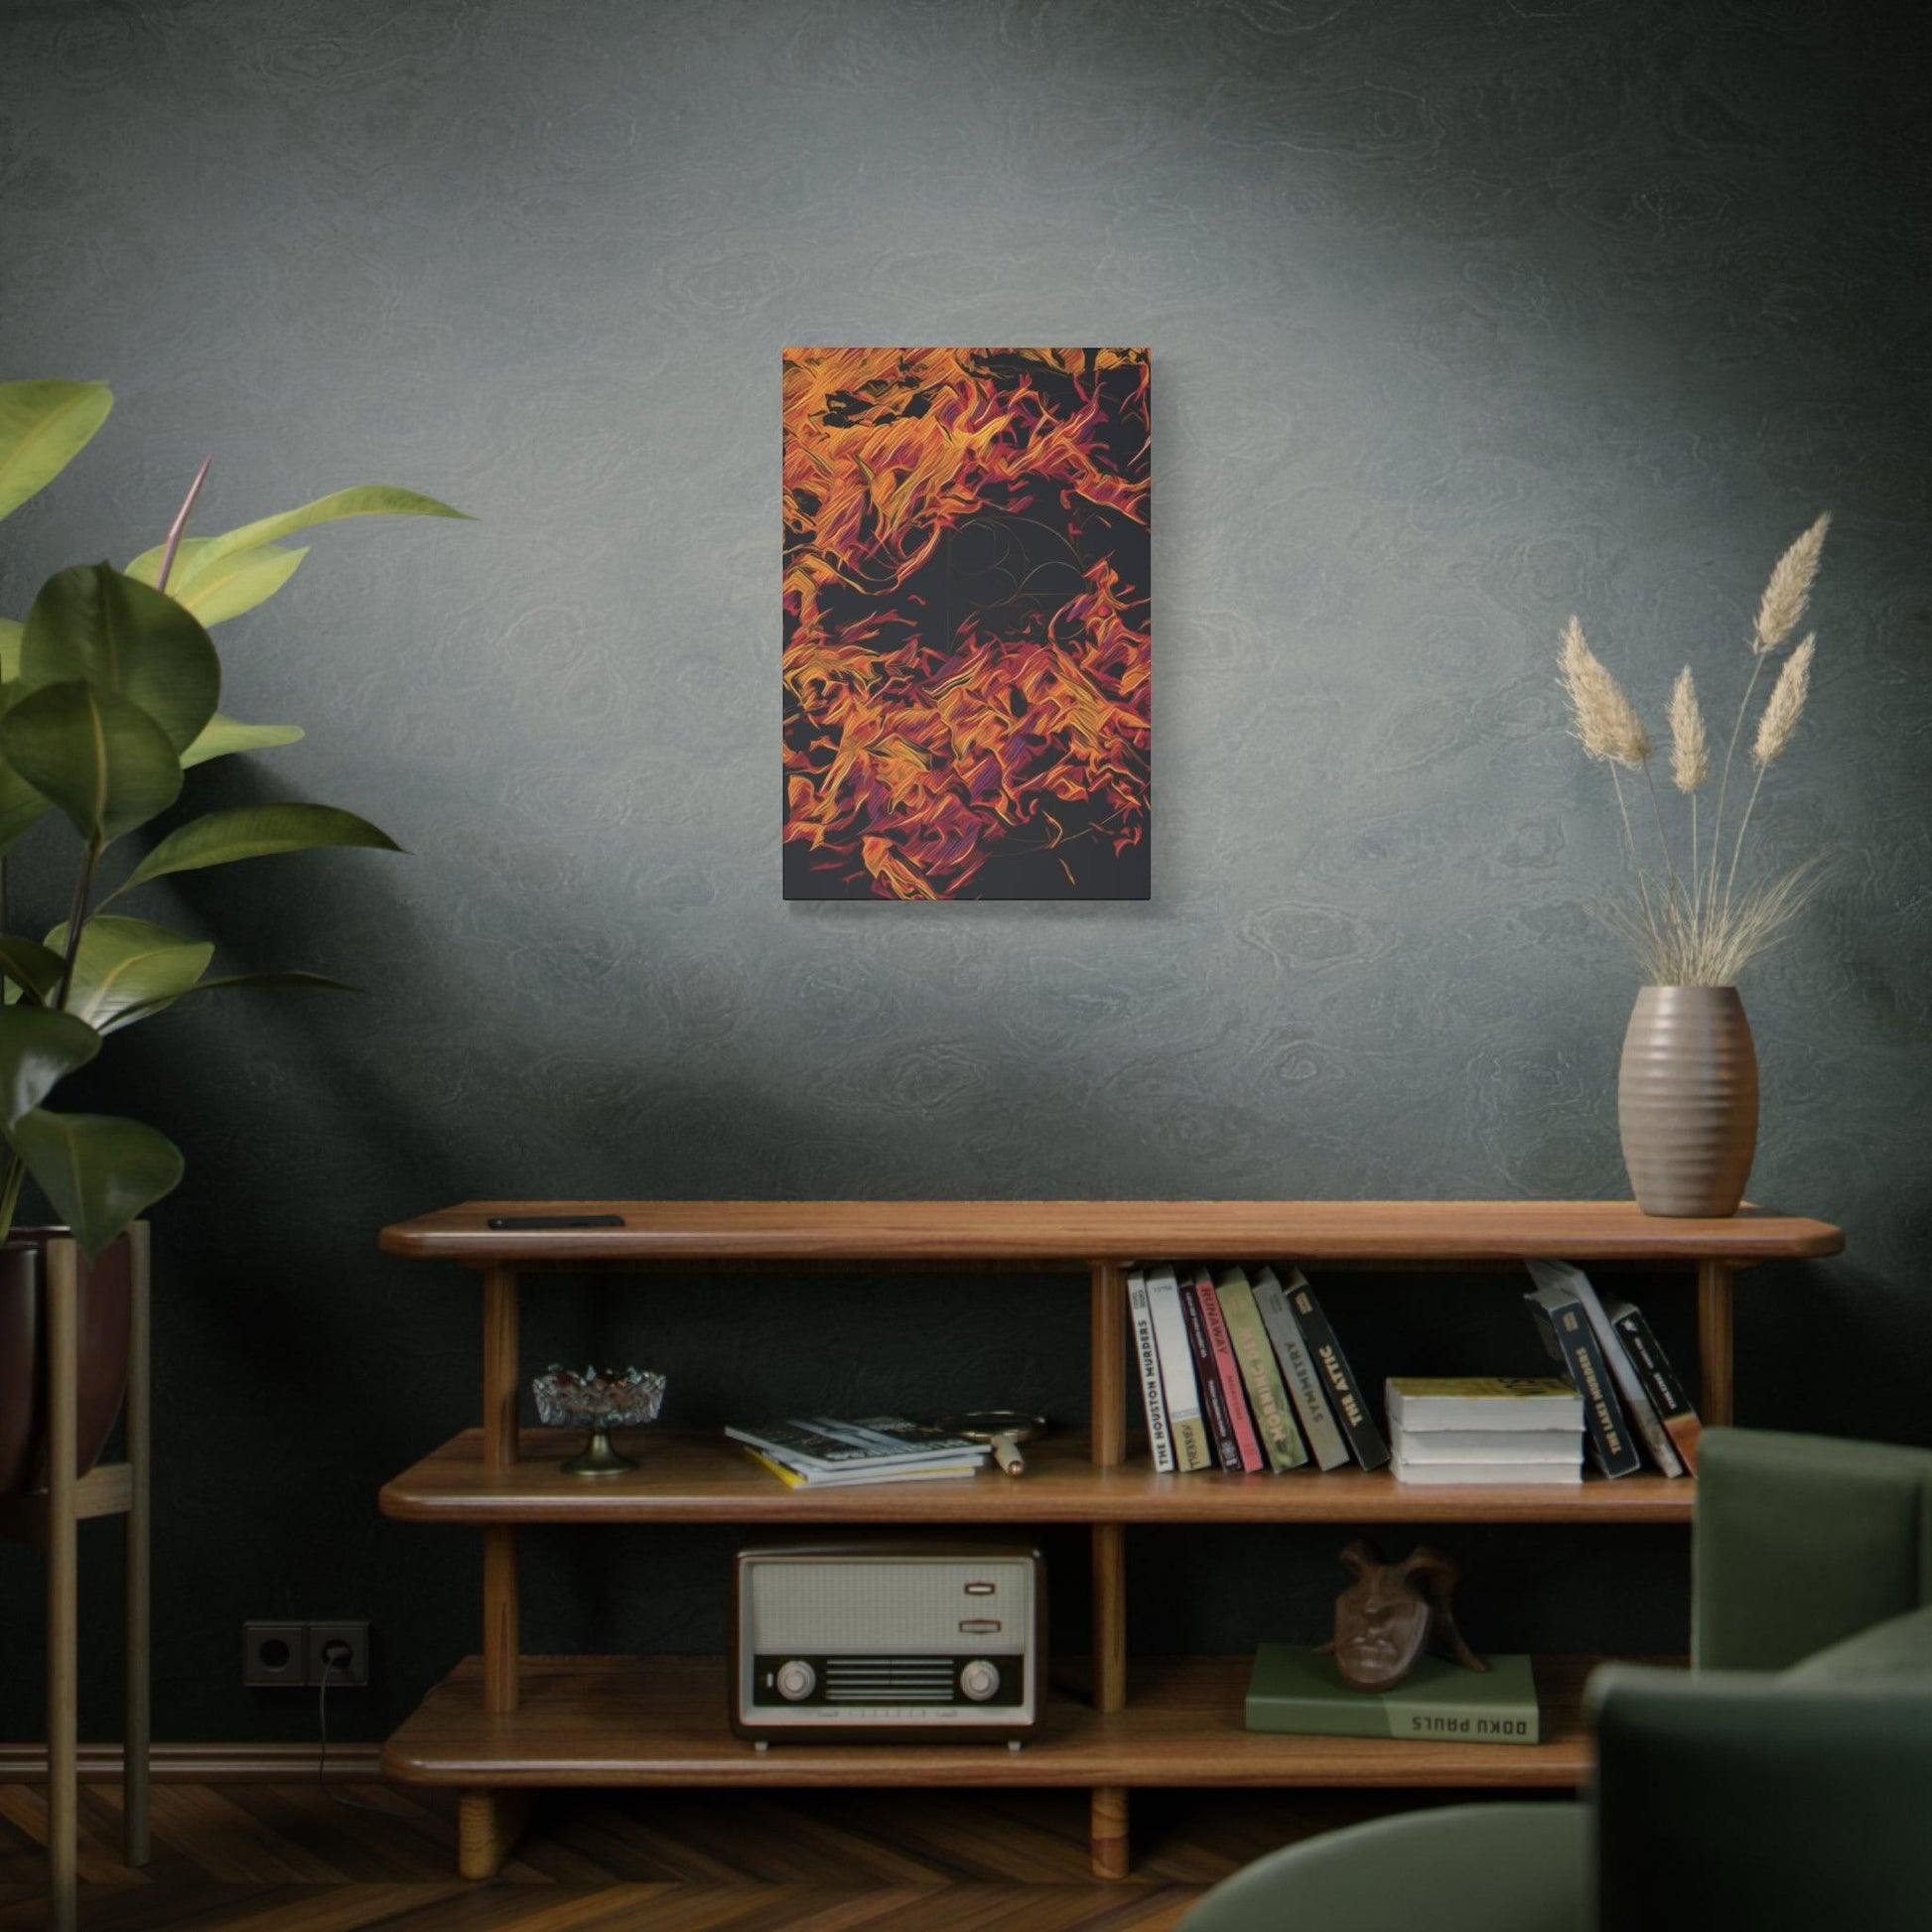 Matte Canvas, Stretched, 1.25" - Fire - Transforming Blaze" - Elements Collection - Artsquarenft